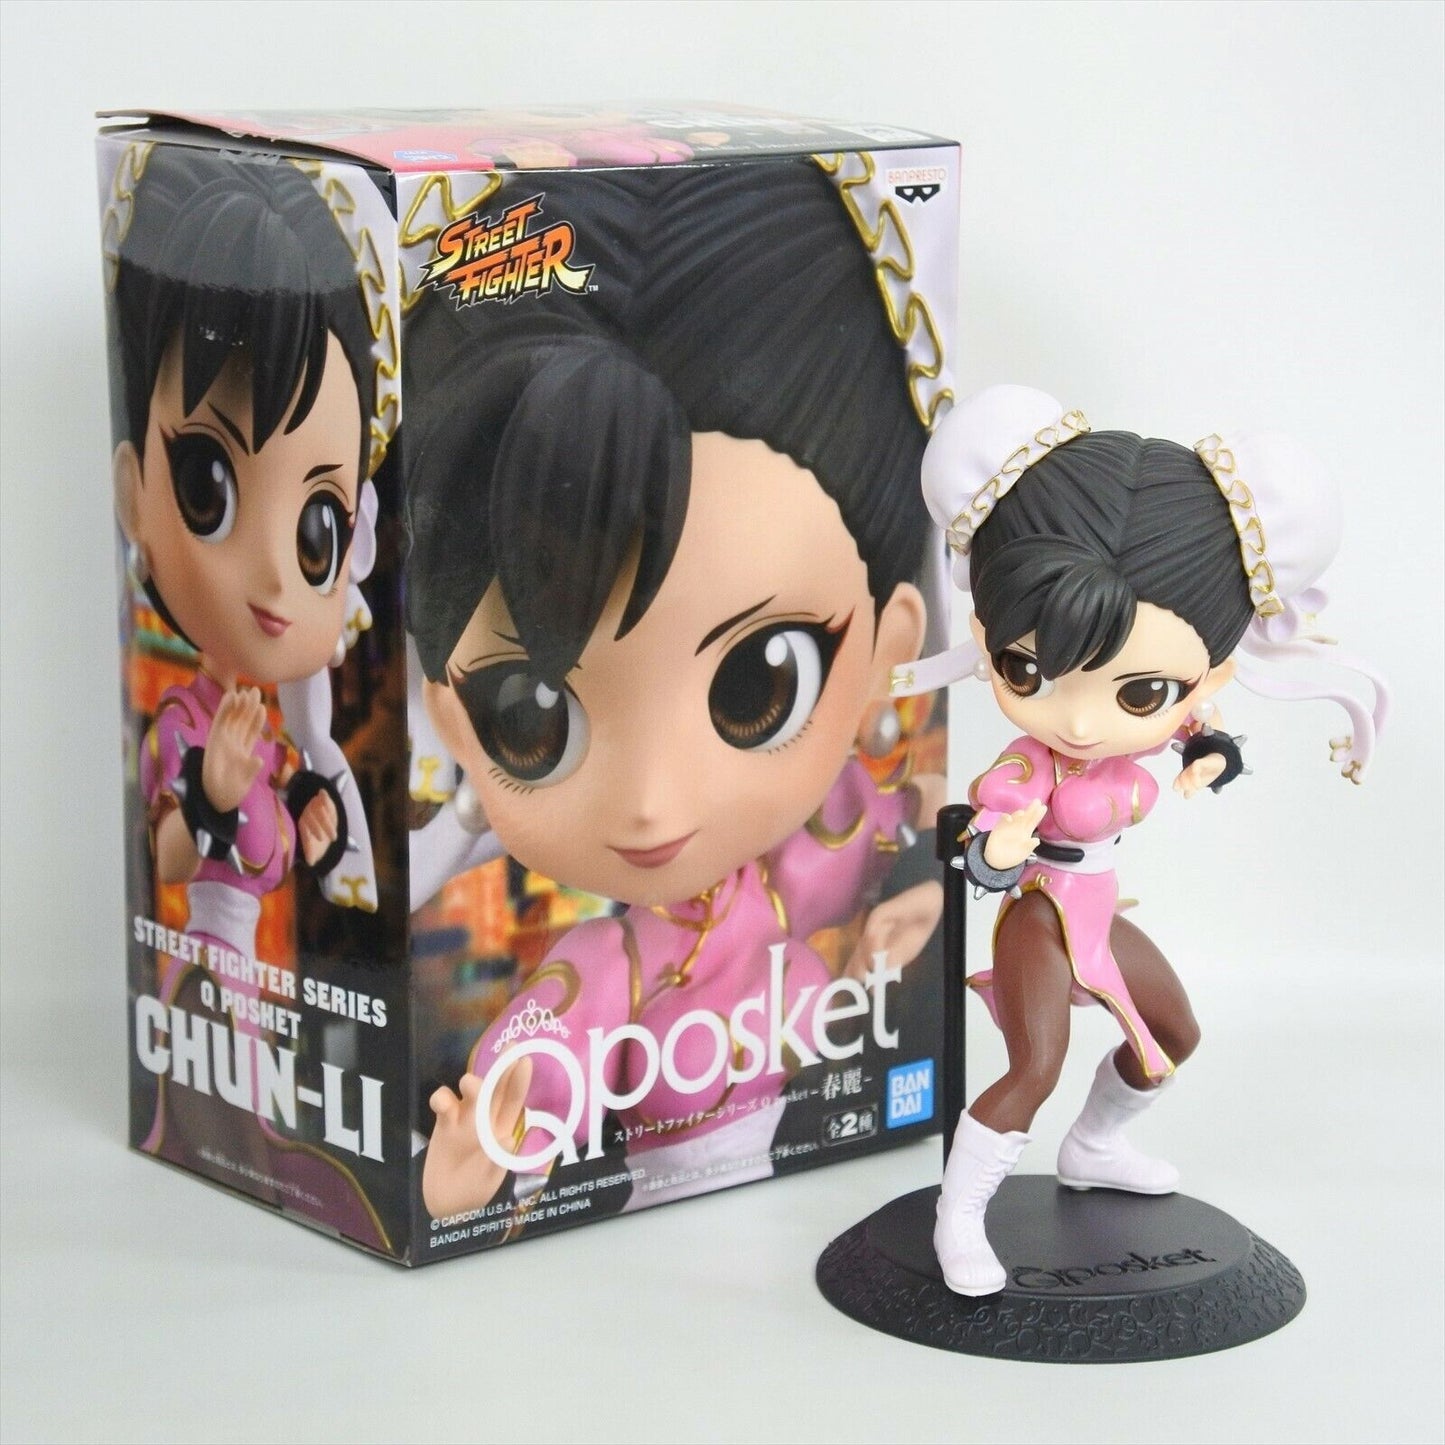 Street Fighter Q posket Pink Chun Li Figure